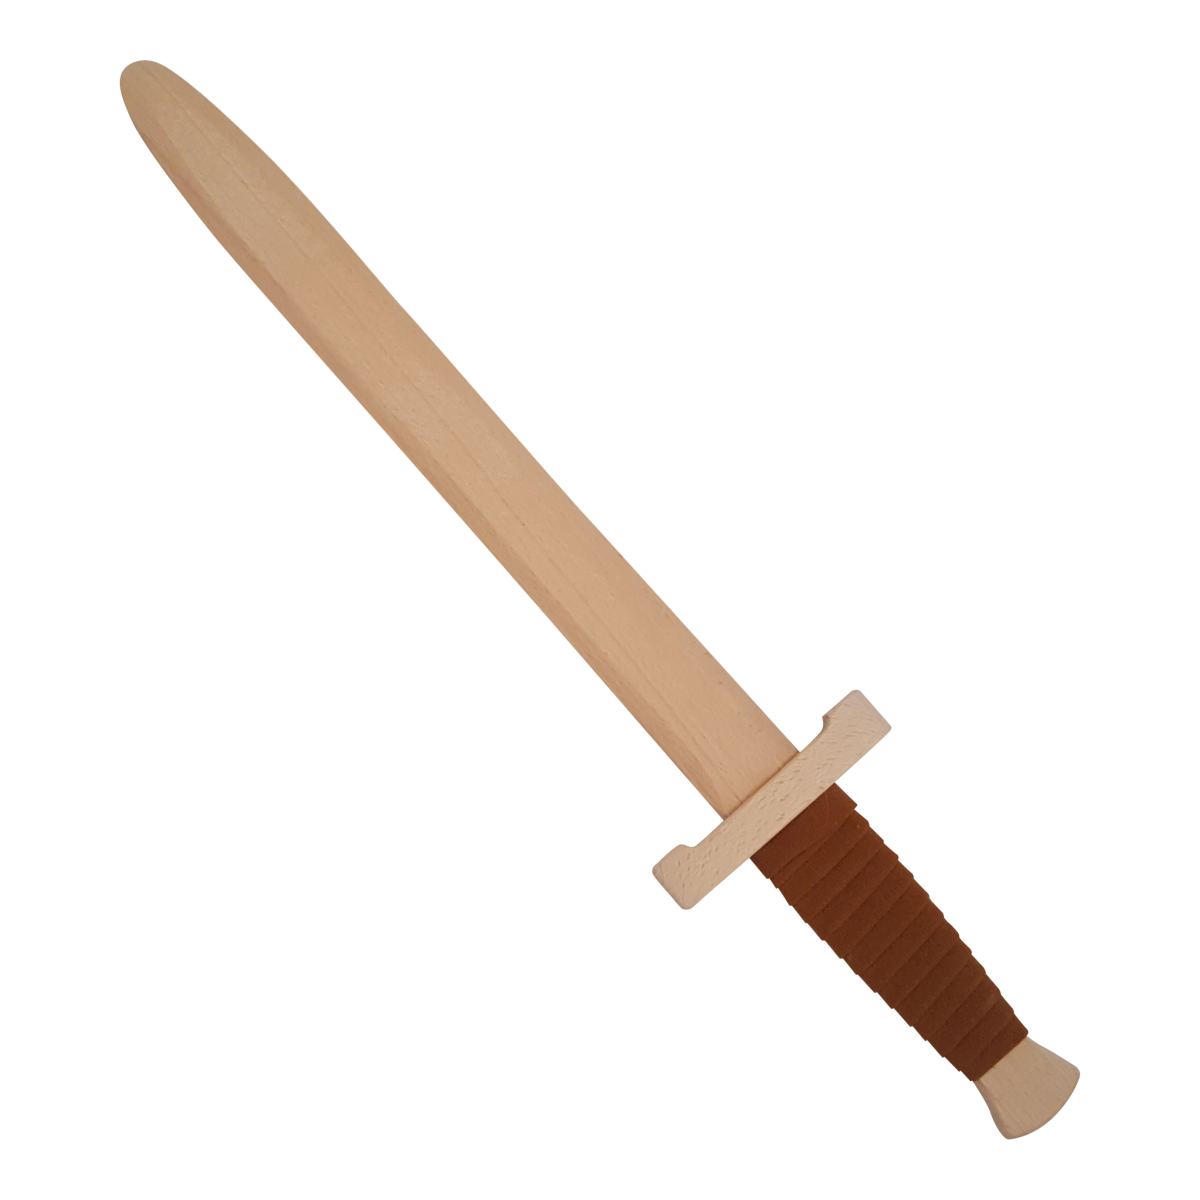 Koakid Kinder Holzschwert Holz Schwert Dolch 36 cm lang Ritter Pirat Spielzeug 